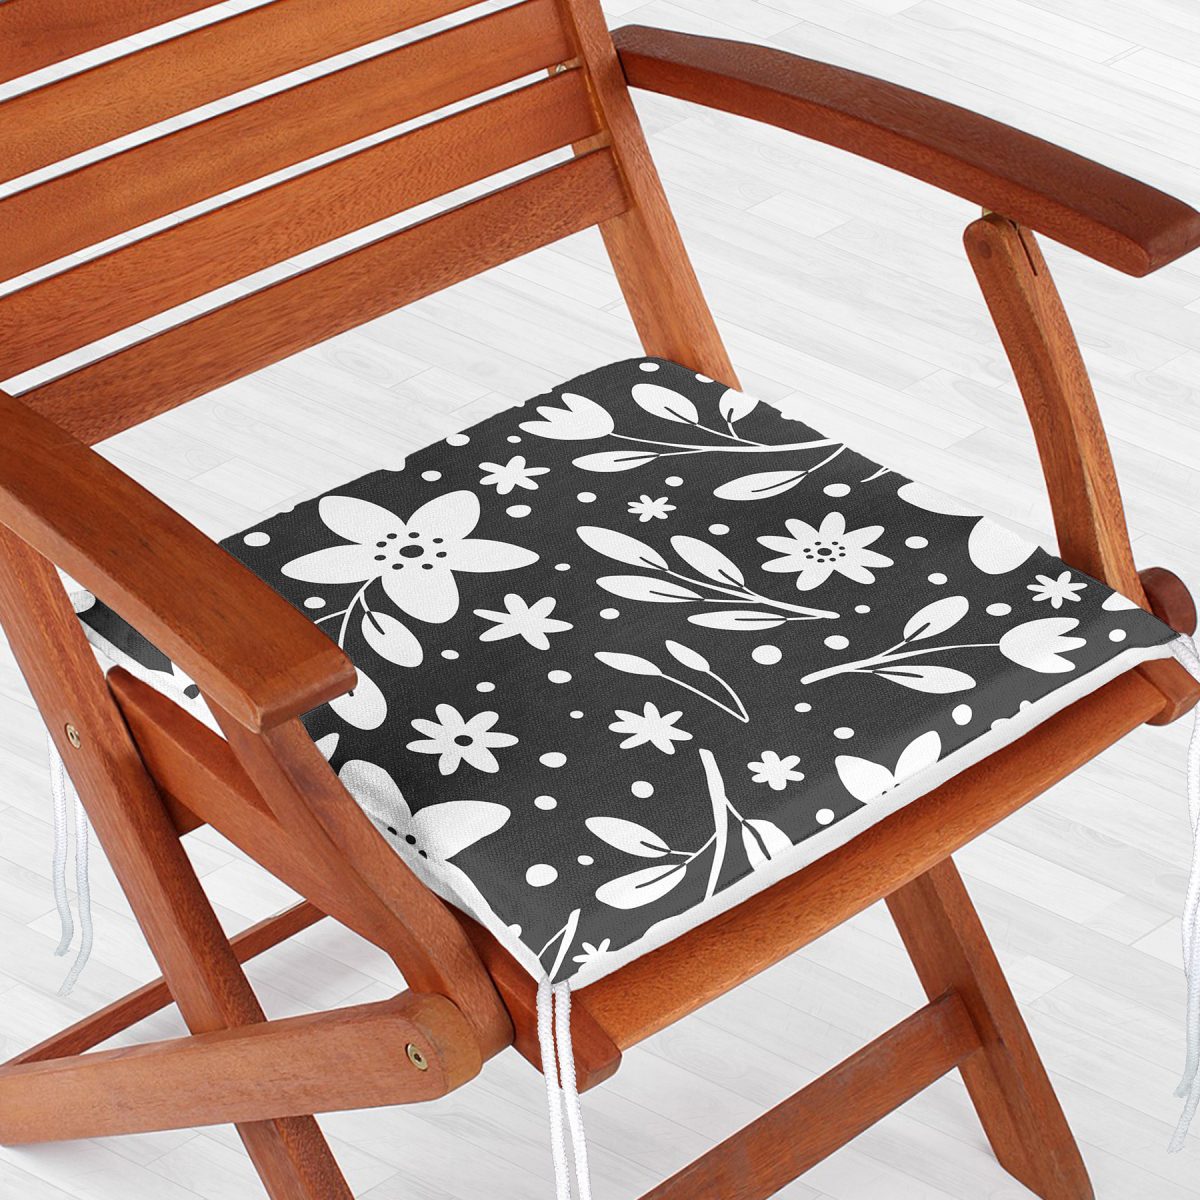 Füme Zeminli Çiçek Desenli Dijital Baskılı Modern Fermuarlı Sandalye Minderi Realhomes